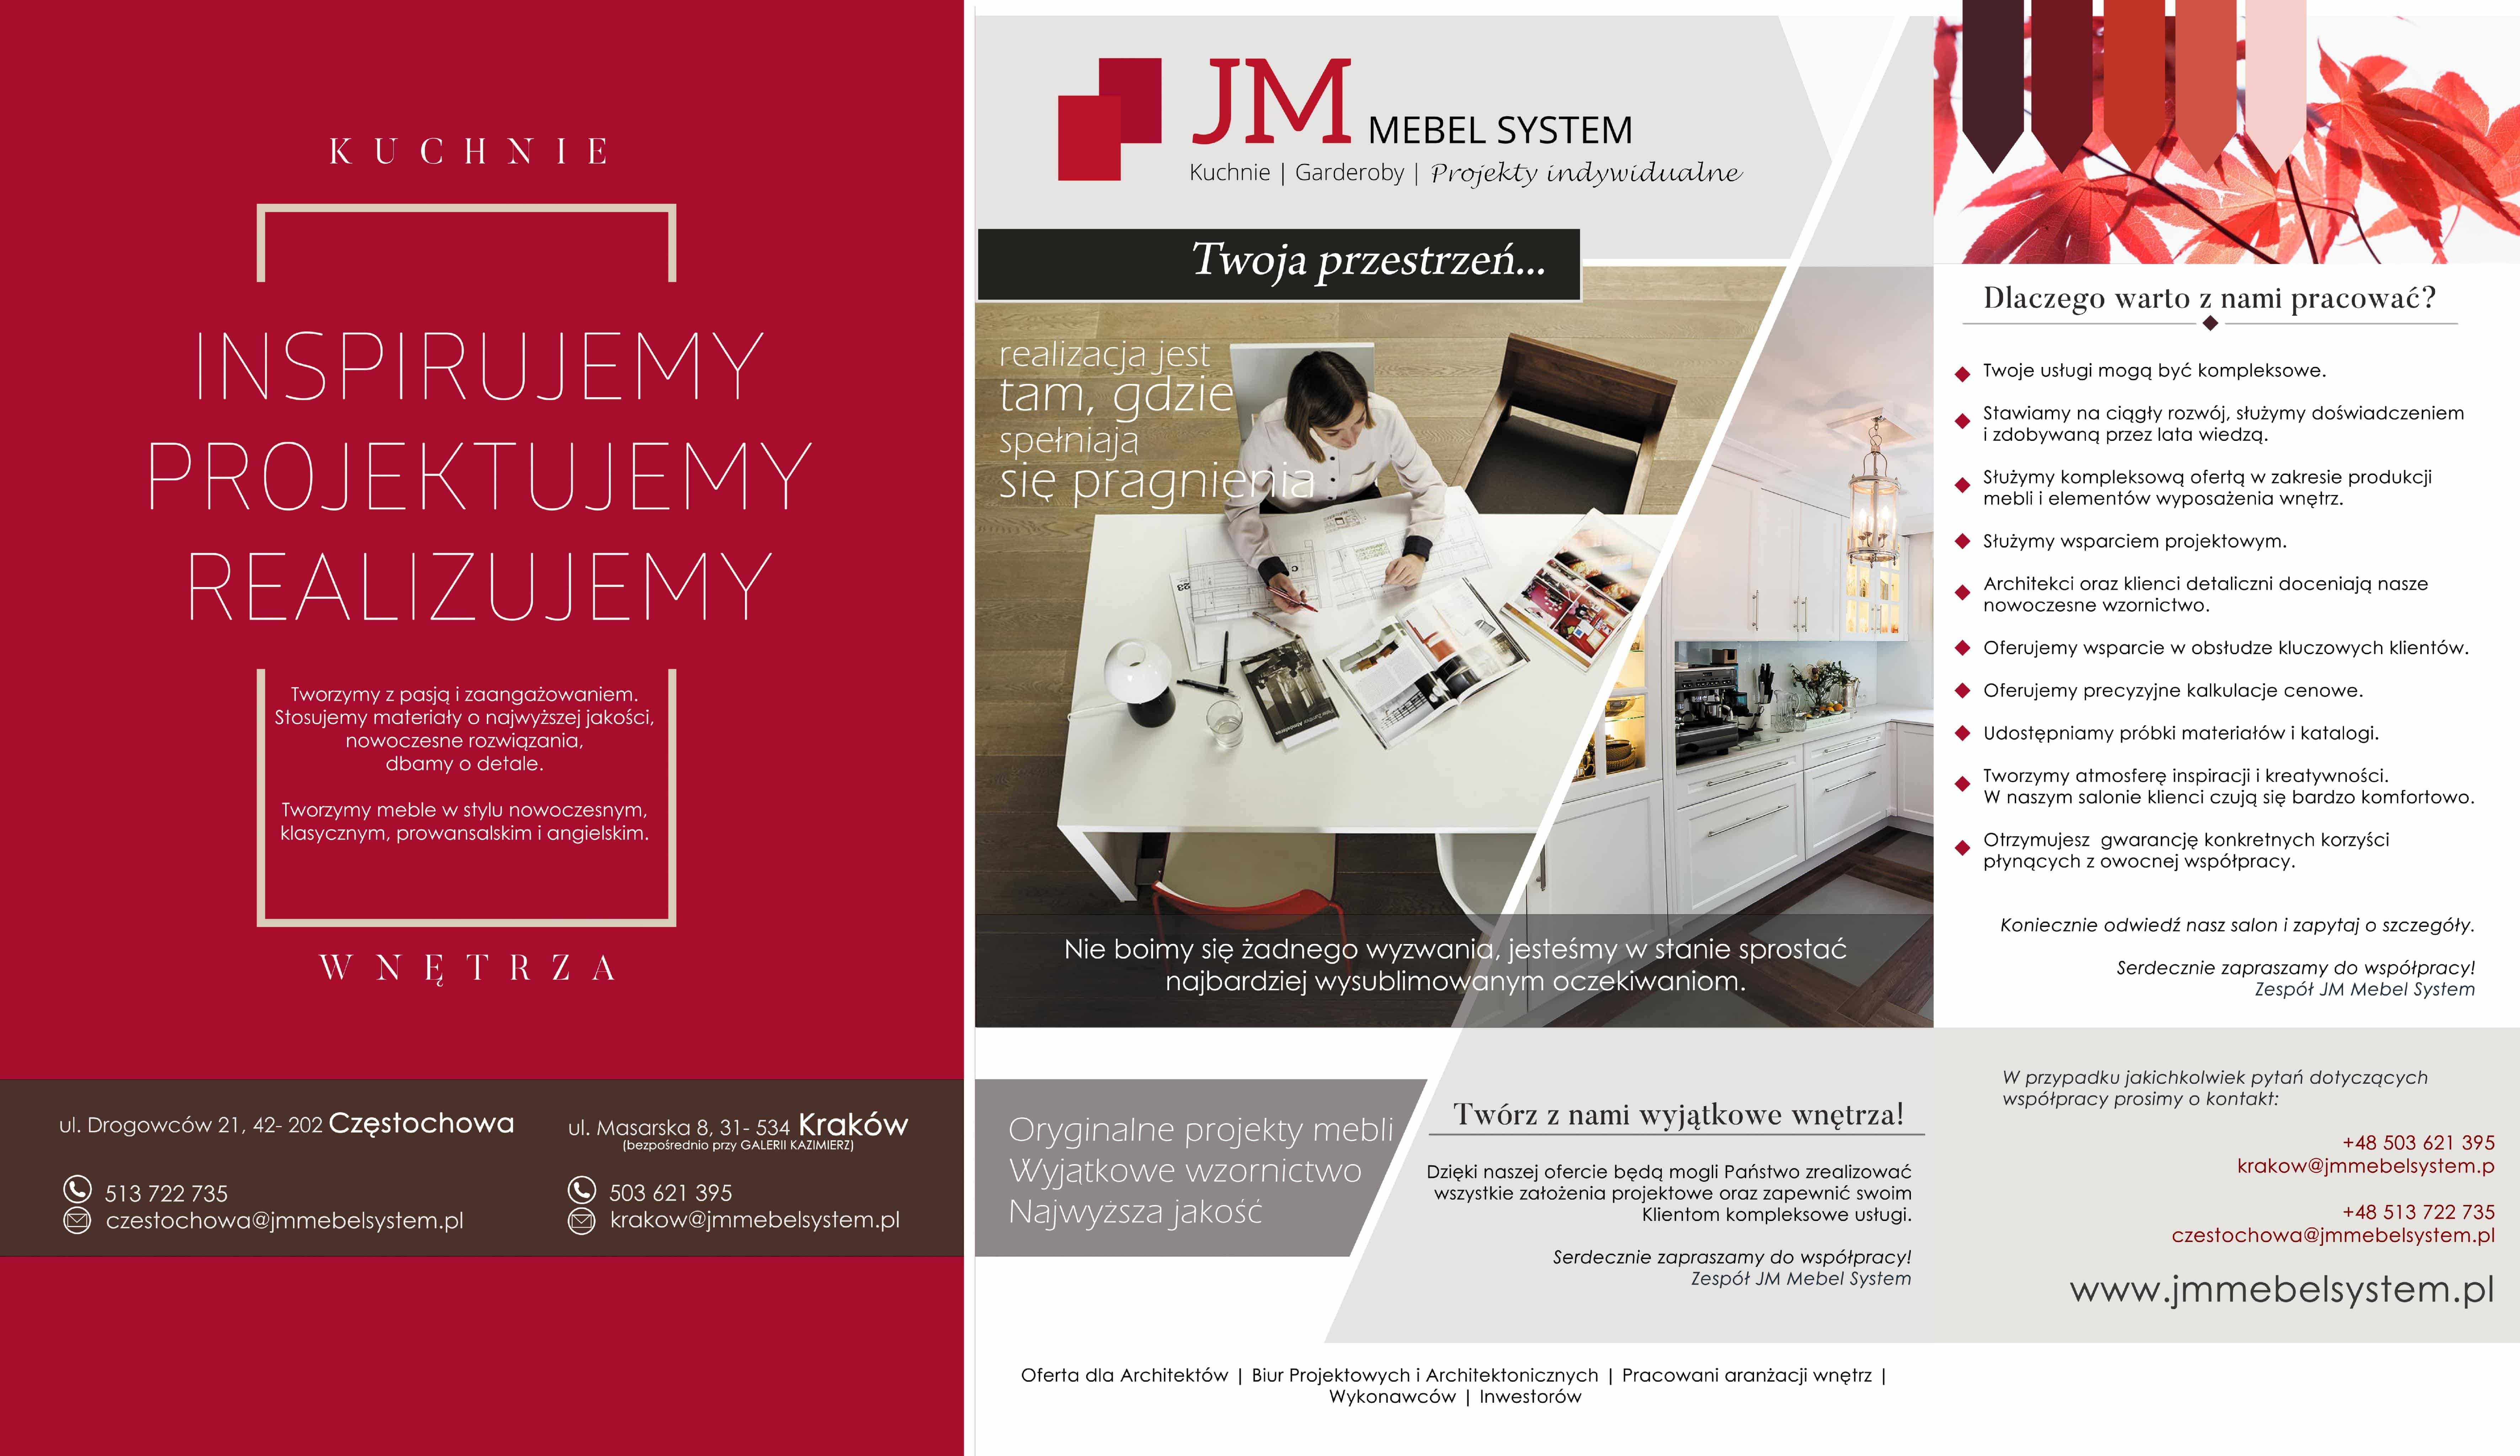 Oferta współpracy JM Mebel System - Infografika